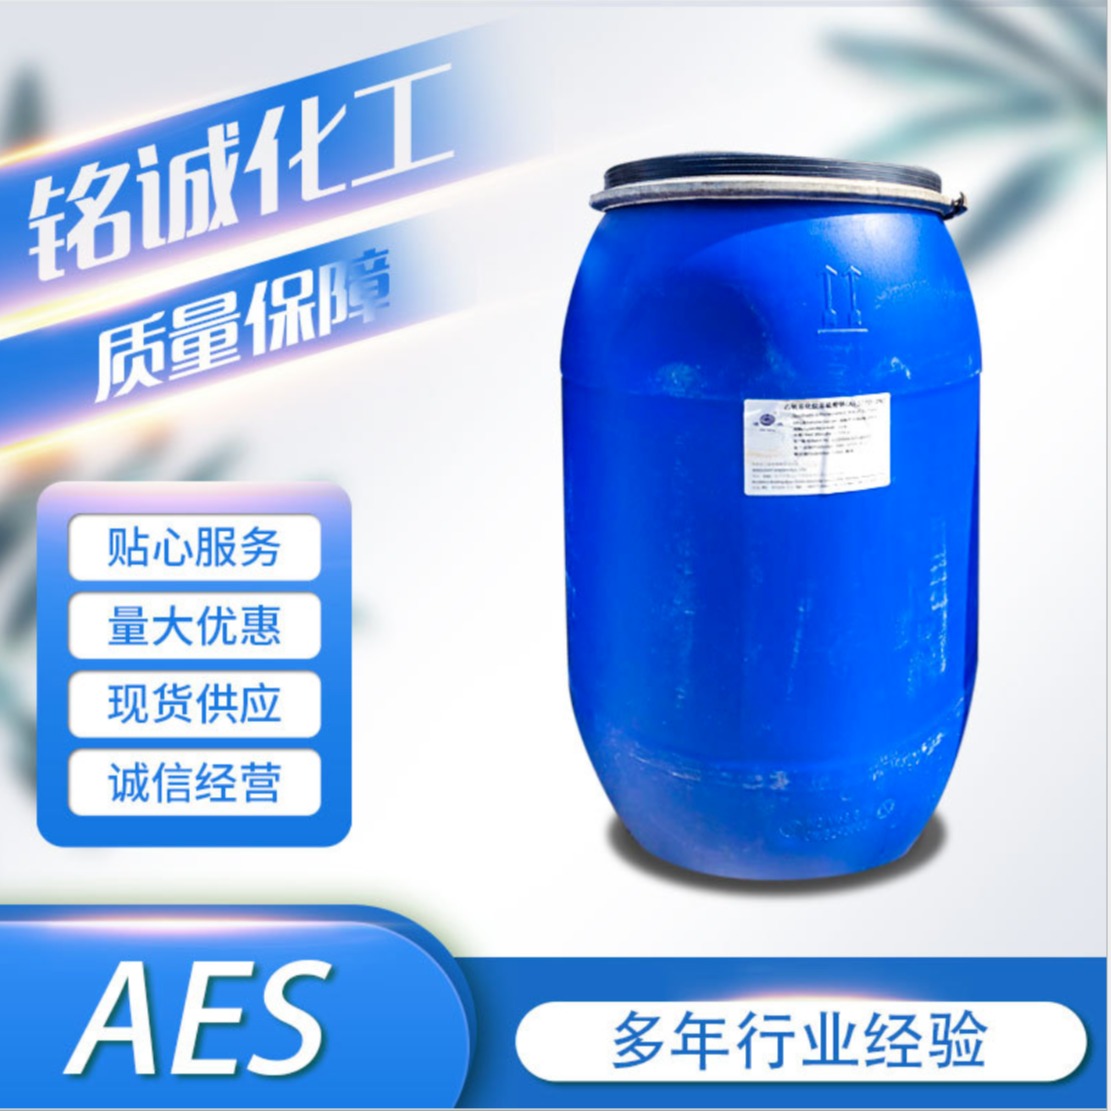 现货供应AES/磺酸/6501/AEO-9/cab-35/6502/K12/盐/卡松洗涤剂aes